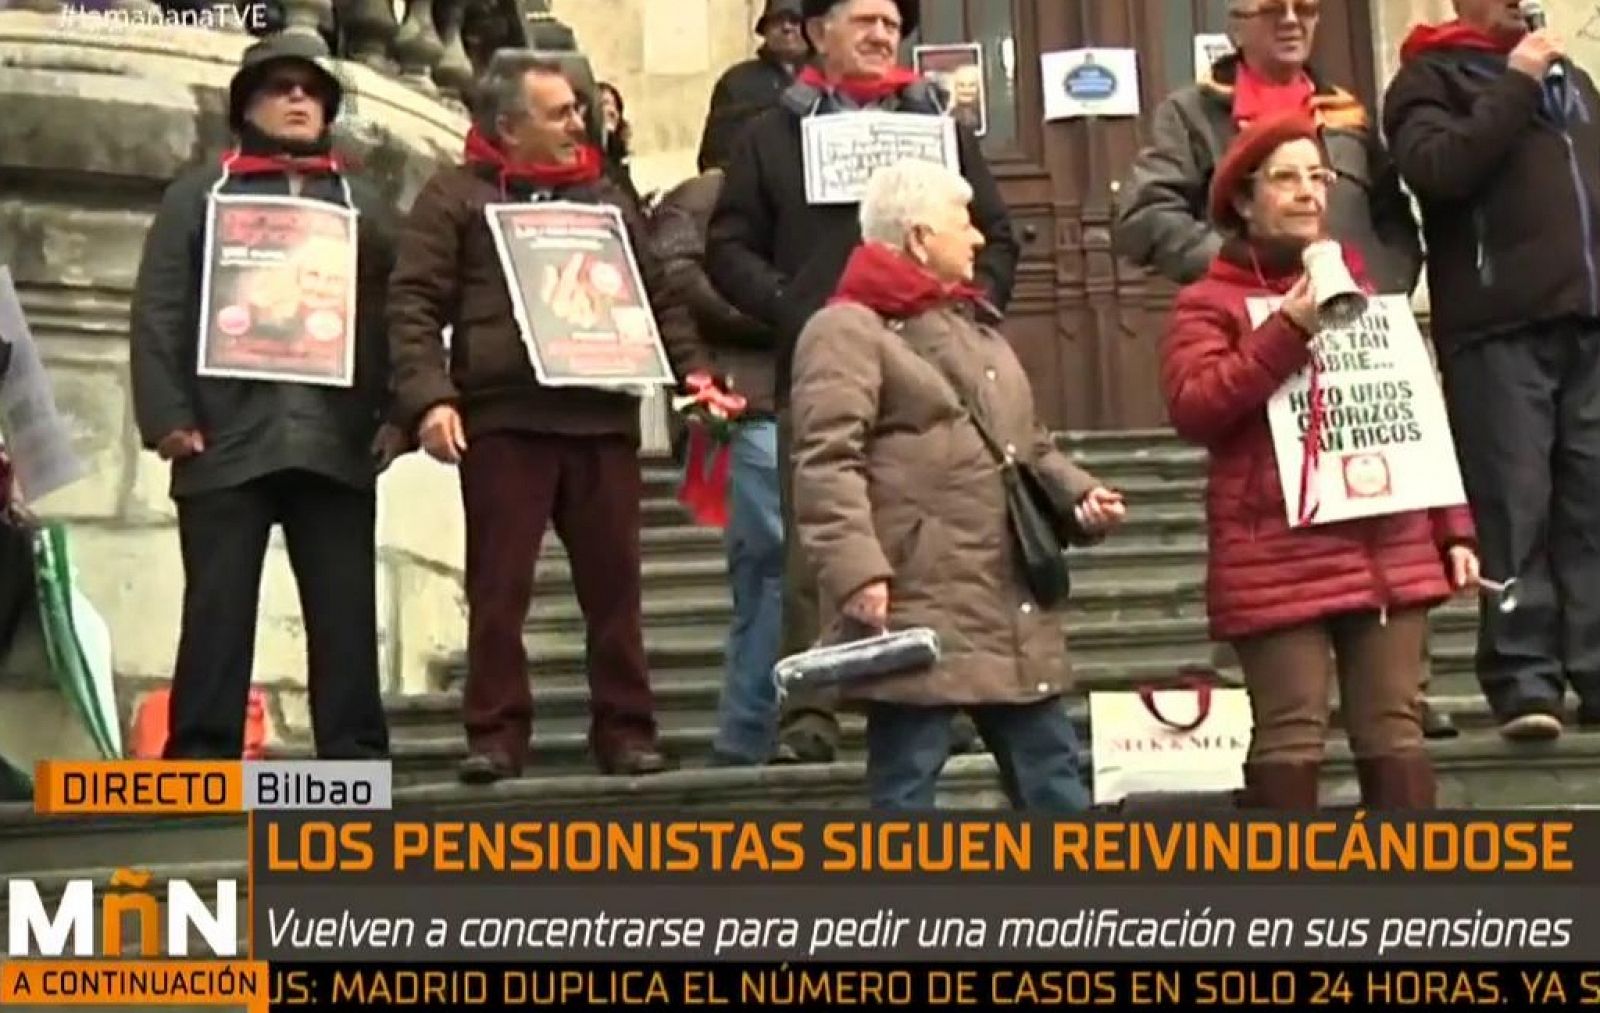 La Mañana - Manifestación de pensionistas en Bilbao: "Somos los pensionistas jubilados peor tratados"